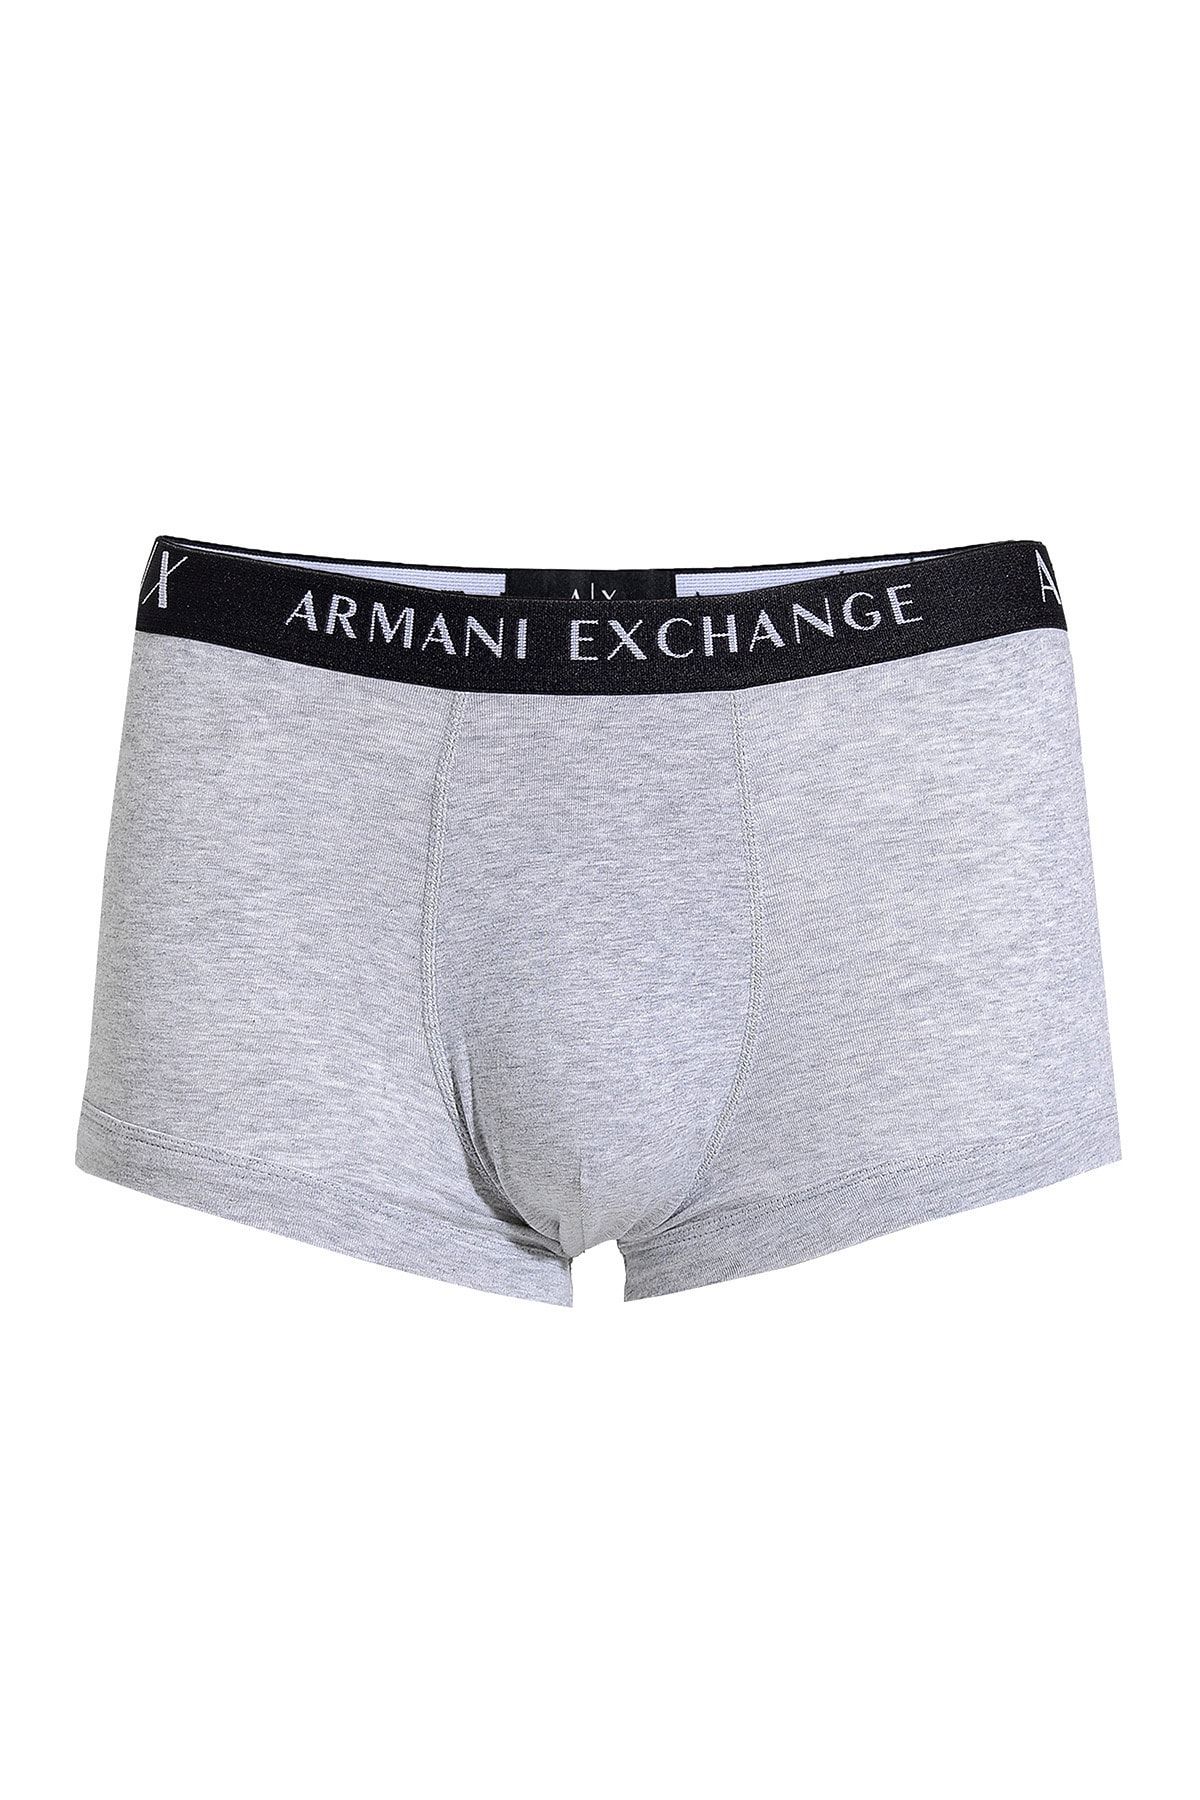 Armani Exchange Erkek Siyah Gri Boxer